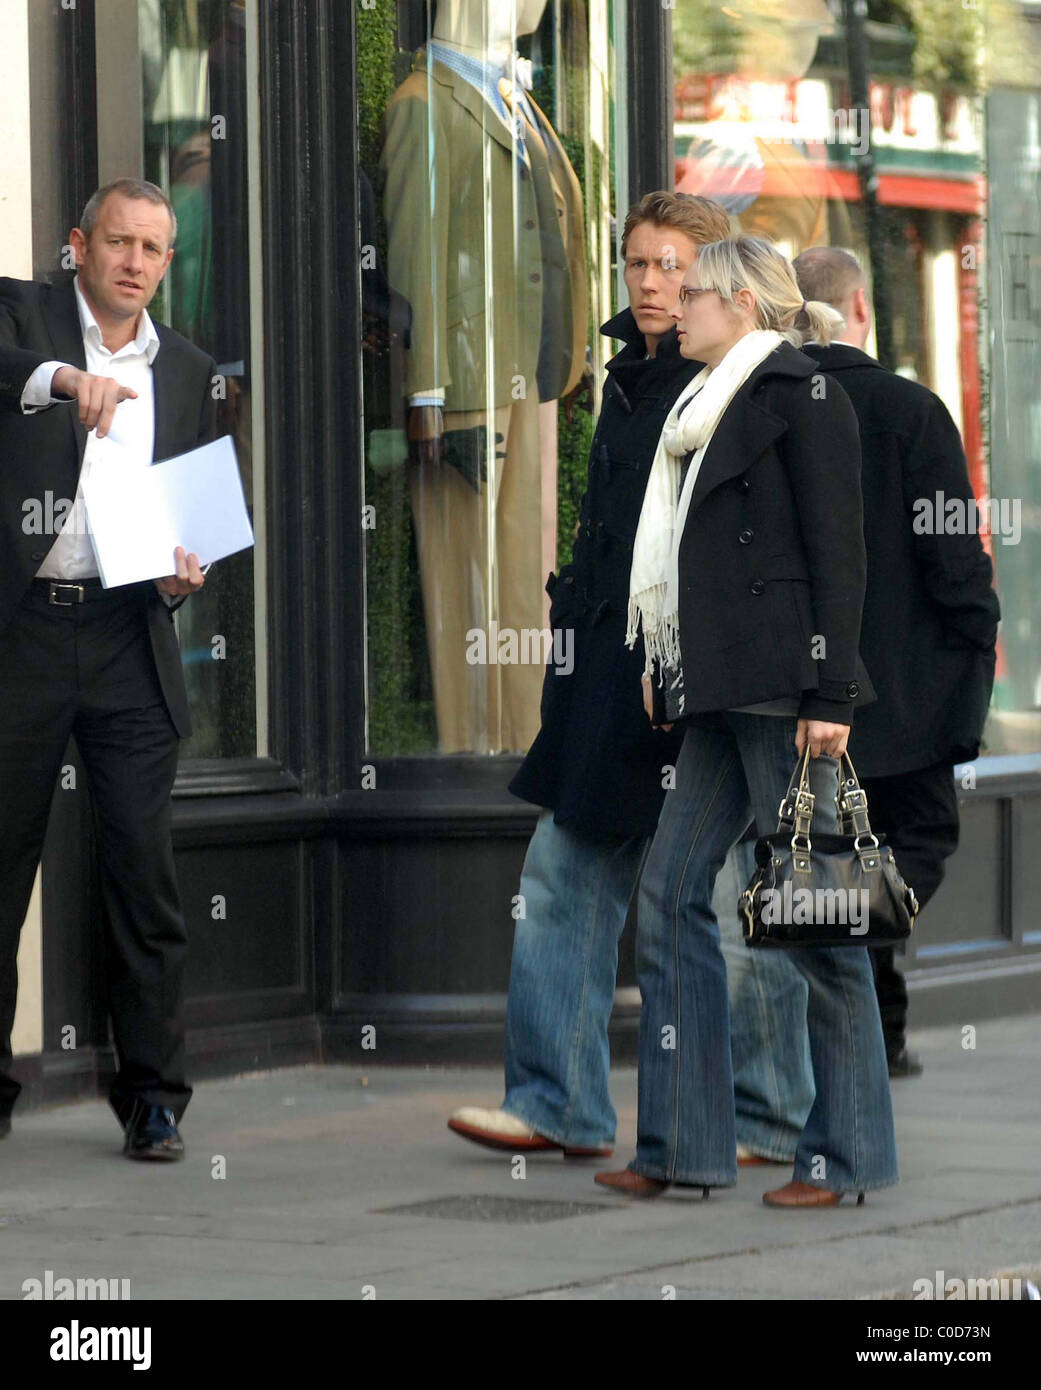 Jonny Wilkinson und Shelley Jenkins ein Hackett-Herrenmode-Shop angekommen.  Dublin, Irland - 11.04.08 keine irischen TABOIDS Stockfotografie - Alamy